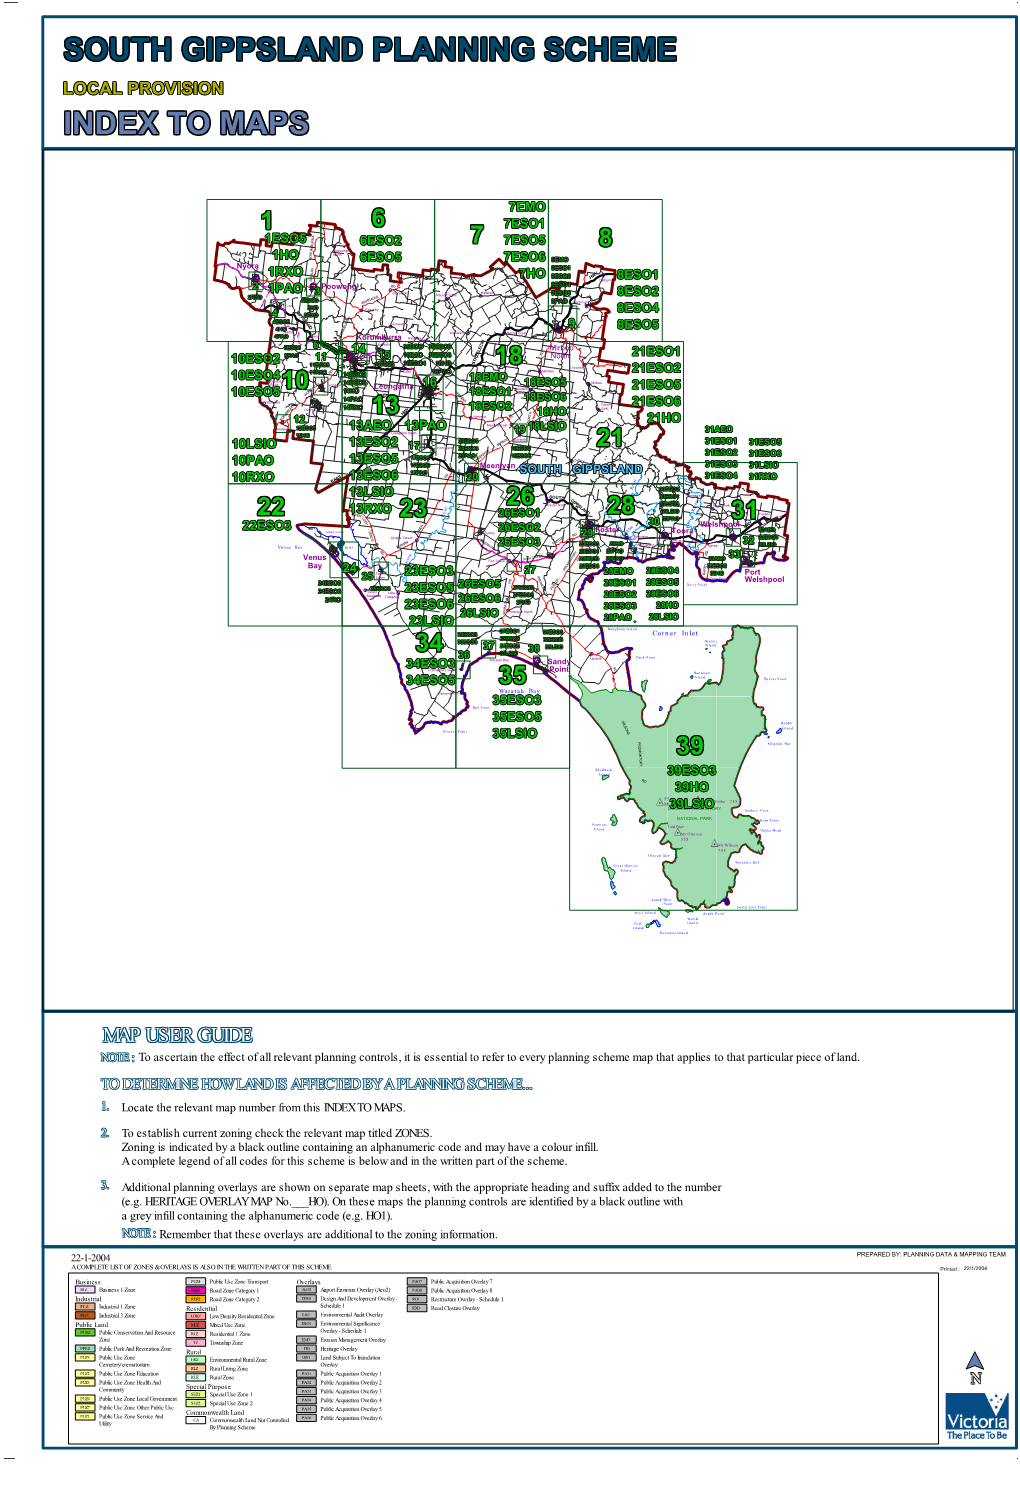 South Gippsland Planning Scheme South